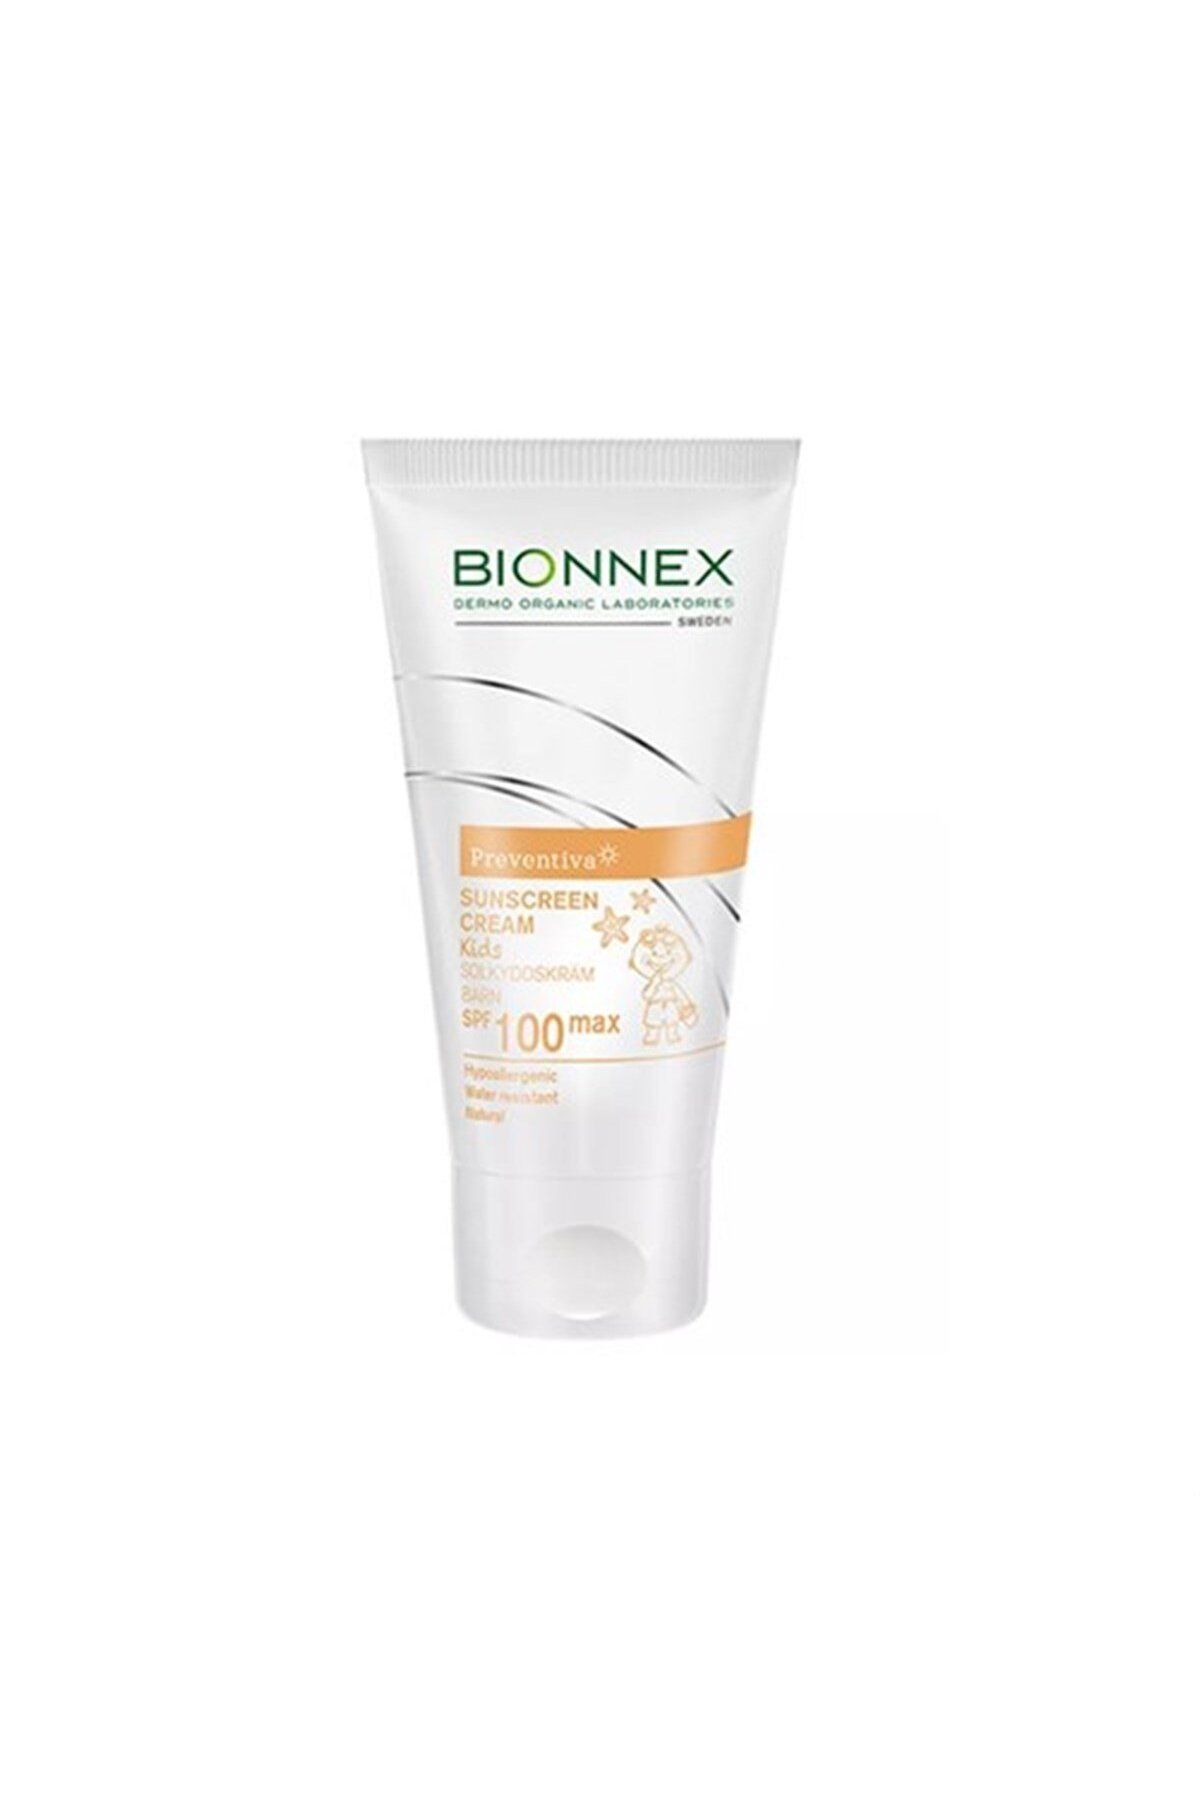 Bionnex Sunscreen Cream Kids Spf 100 Max 50 ml